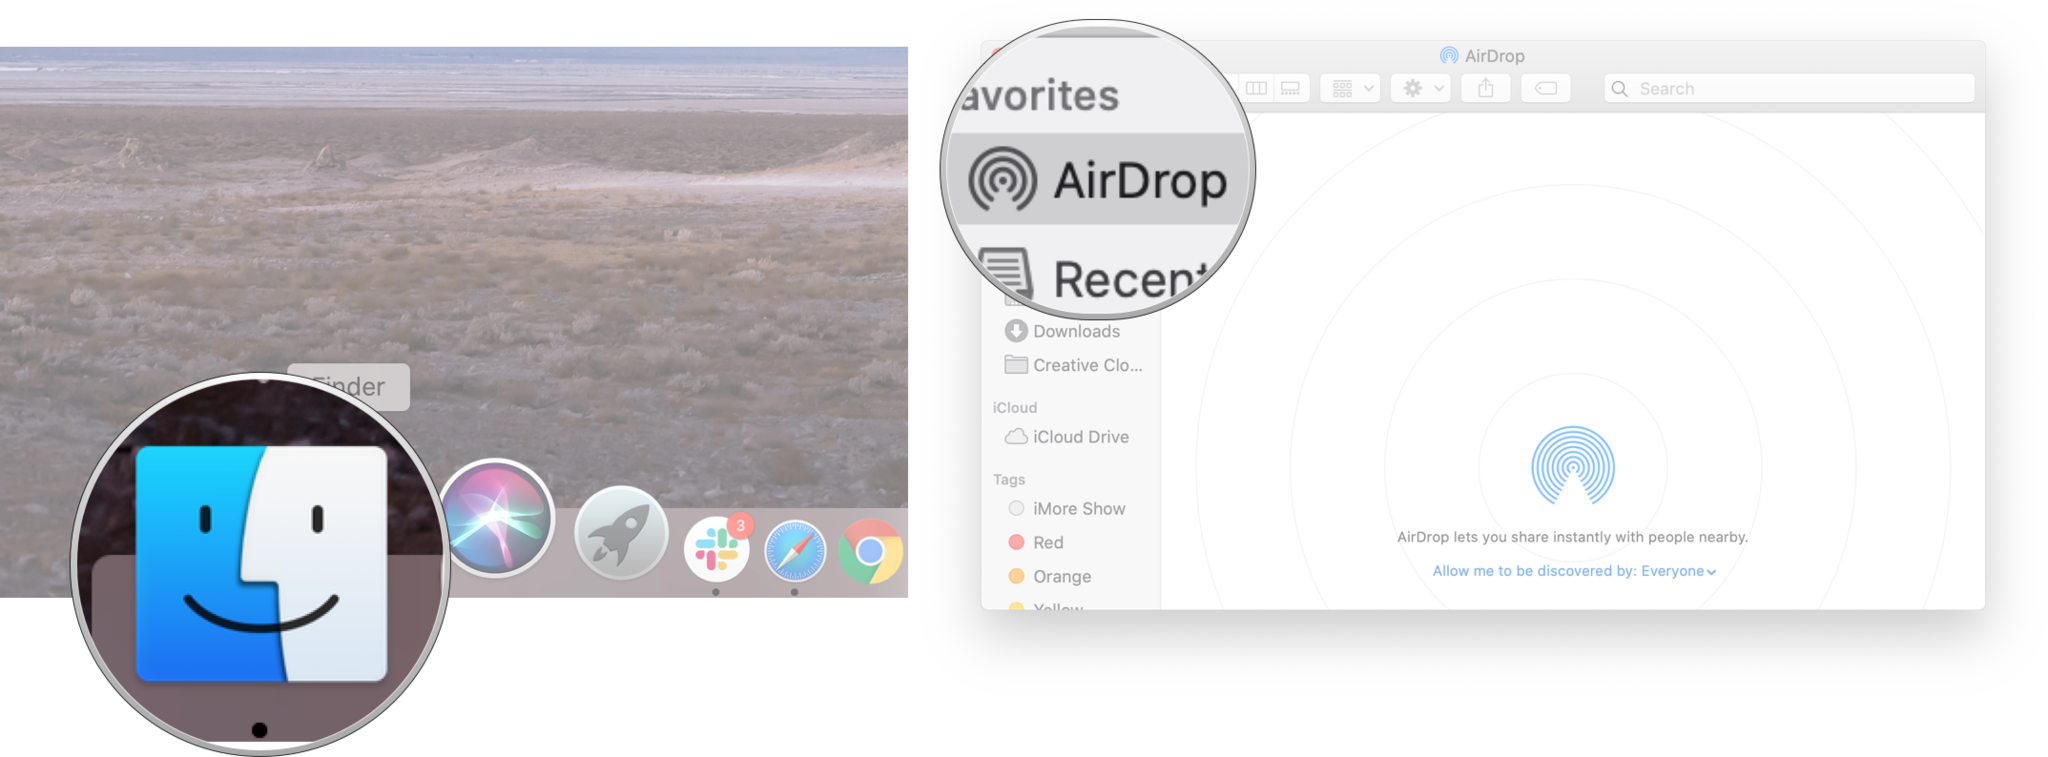 Sesuaikan akses AirDrop di Mac: Luncurkan Finder lalu klik AirDrop.